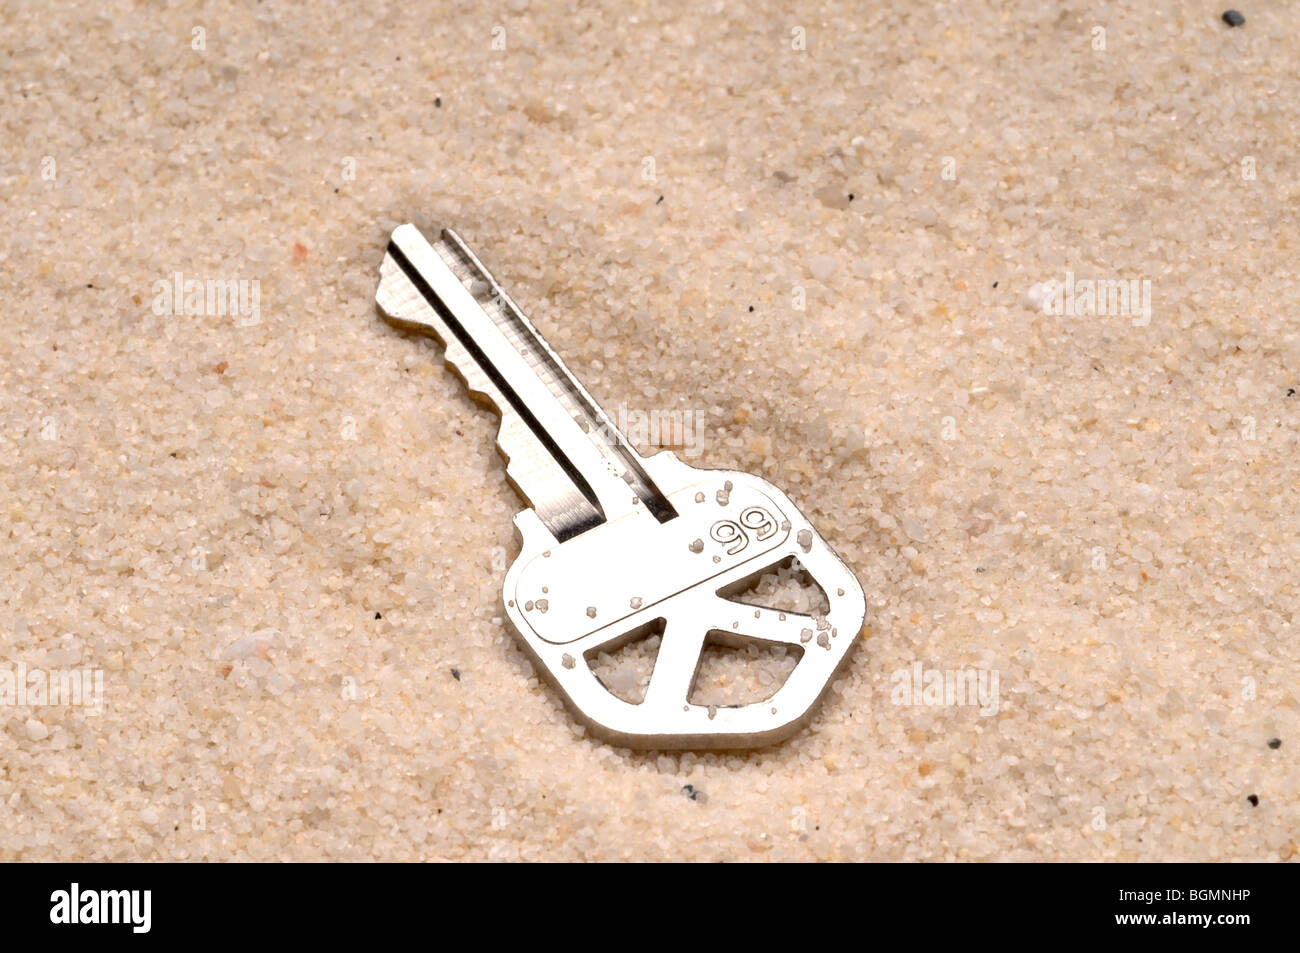 L'immagine orizzontale di una chiave di casa nella sabbia Foto Stock